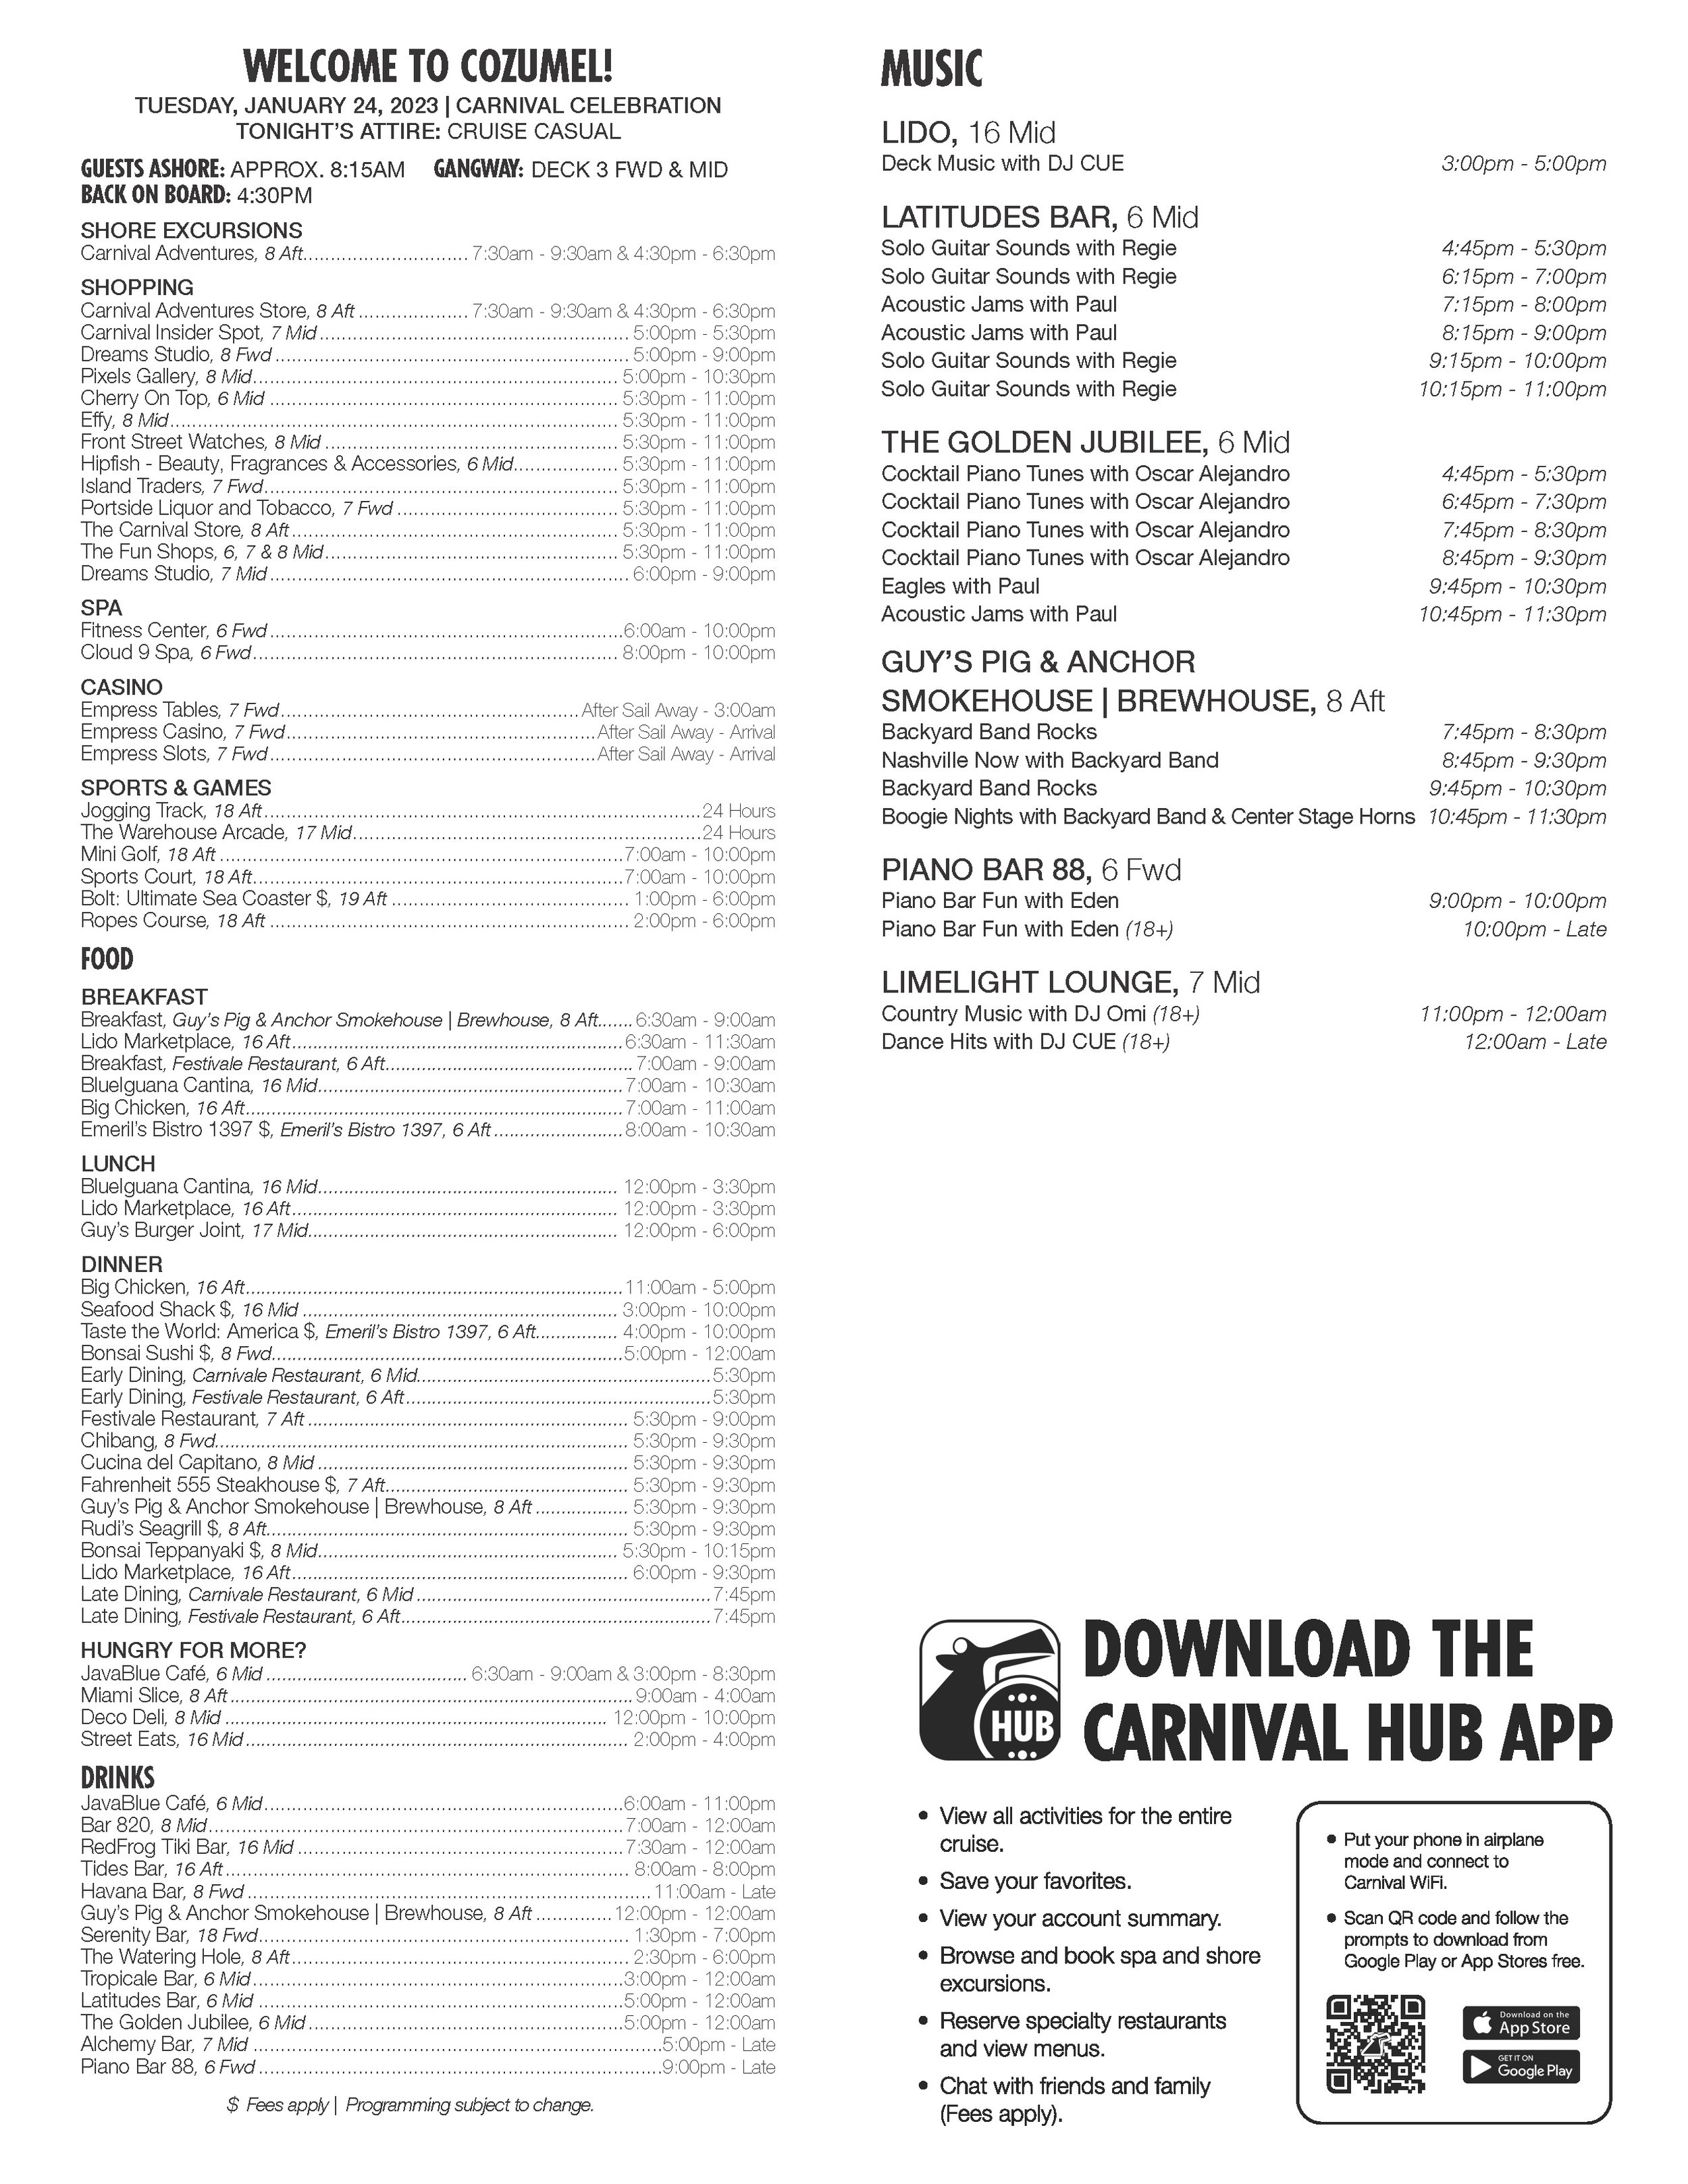 Carnival Celebration - January 24, 2023 -Cozumel - day 03_Page_2.jpg